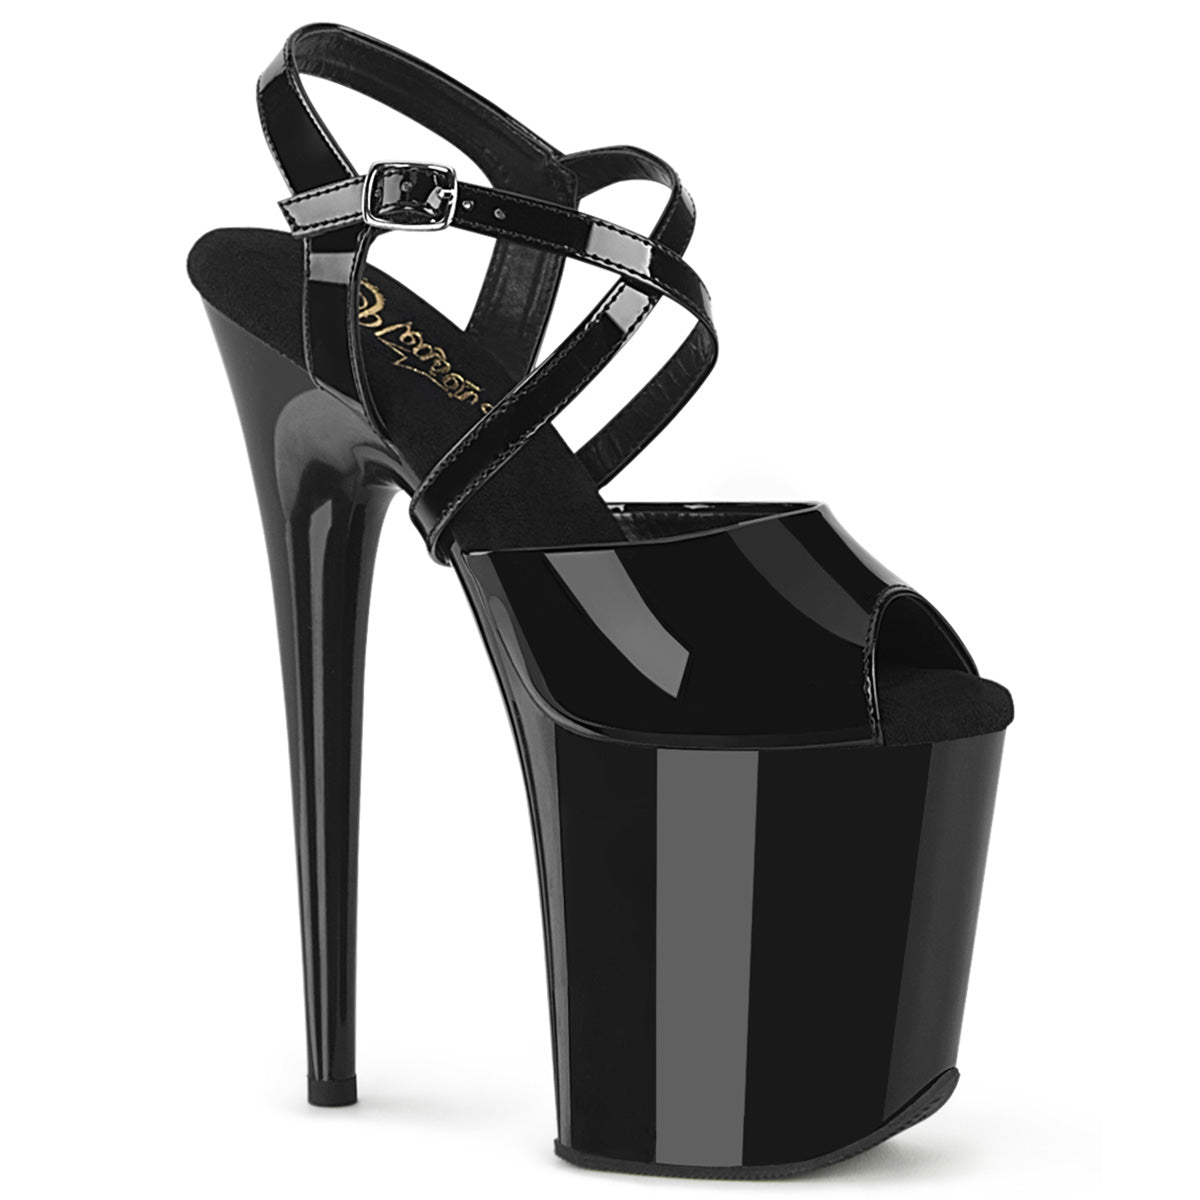 FLAMINGO-824 Pleaser Black Patent Platform Shoes [Exotic Dancing Shoes]